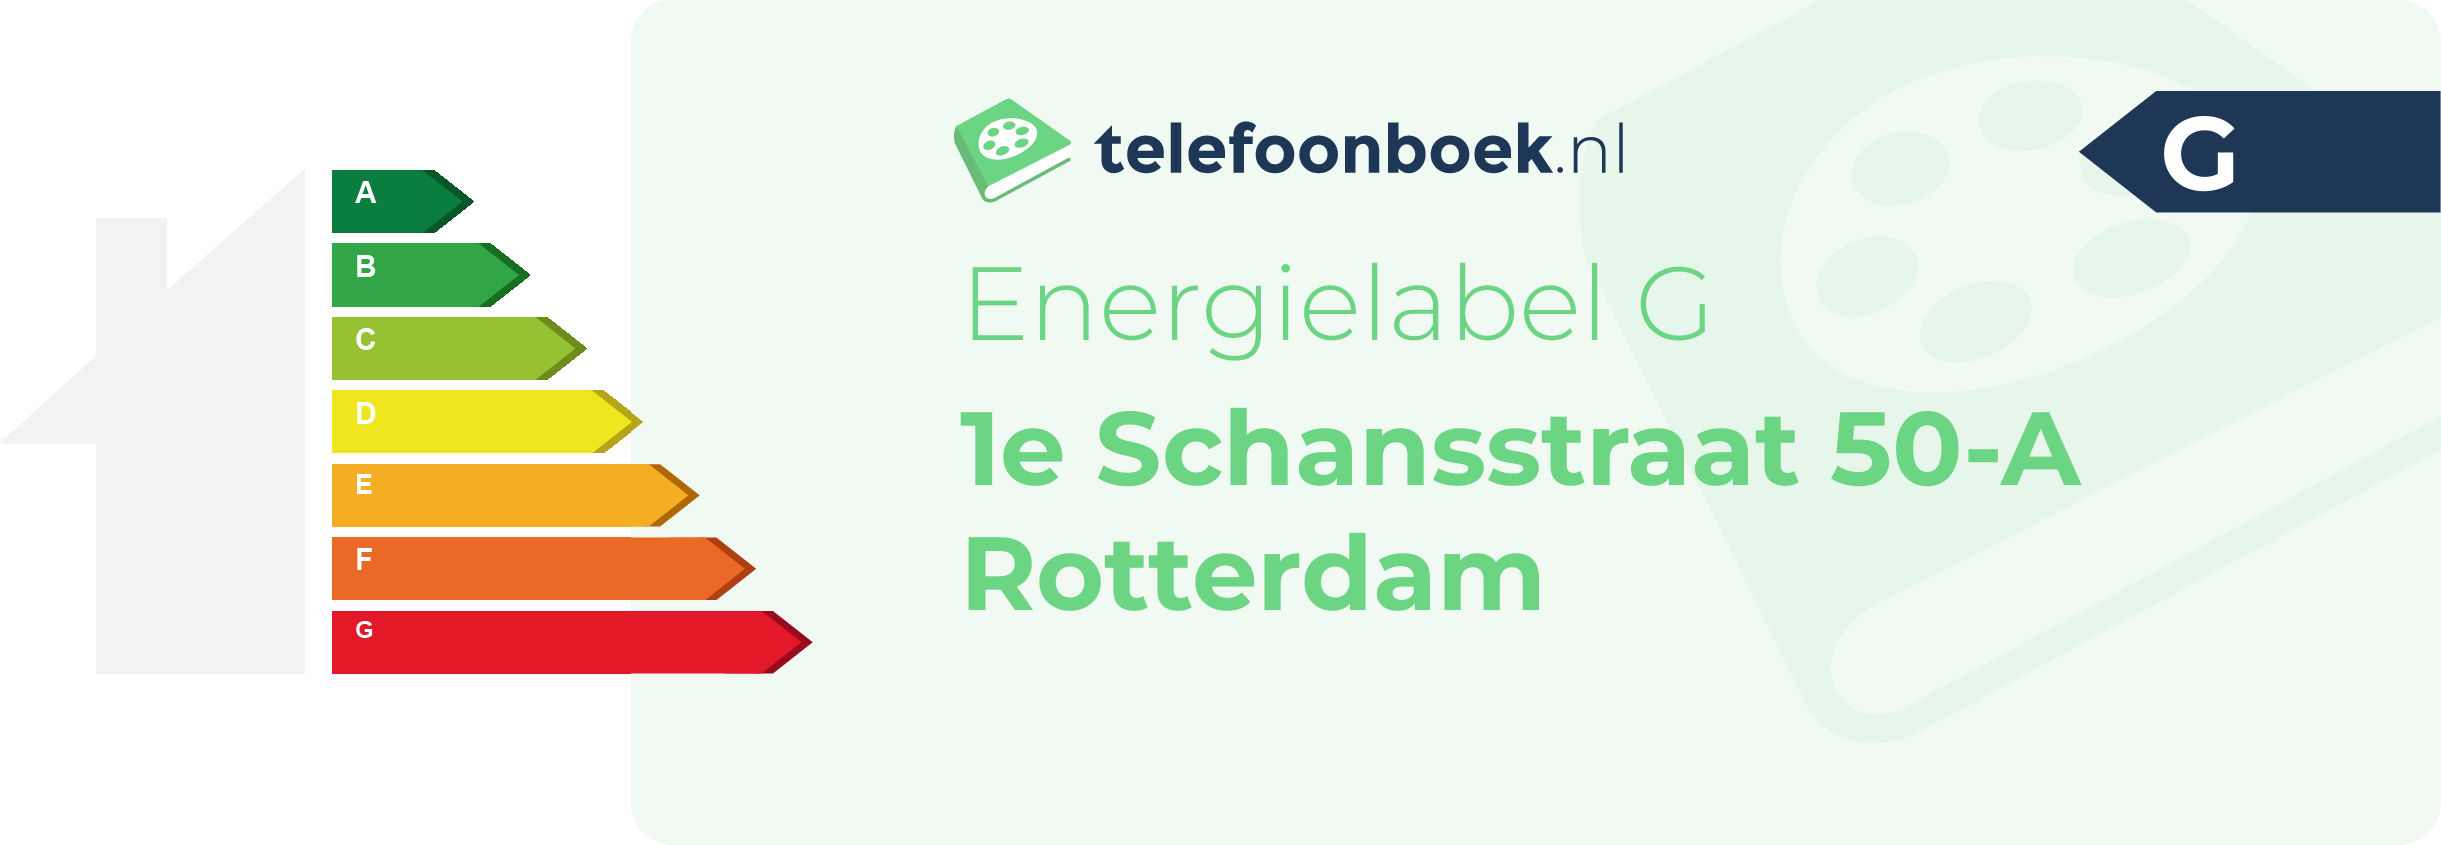 Energielabel 1e Schansstraat 50-A Rotterdam